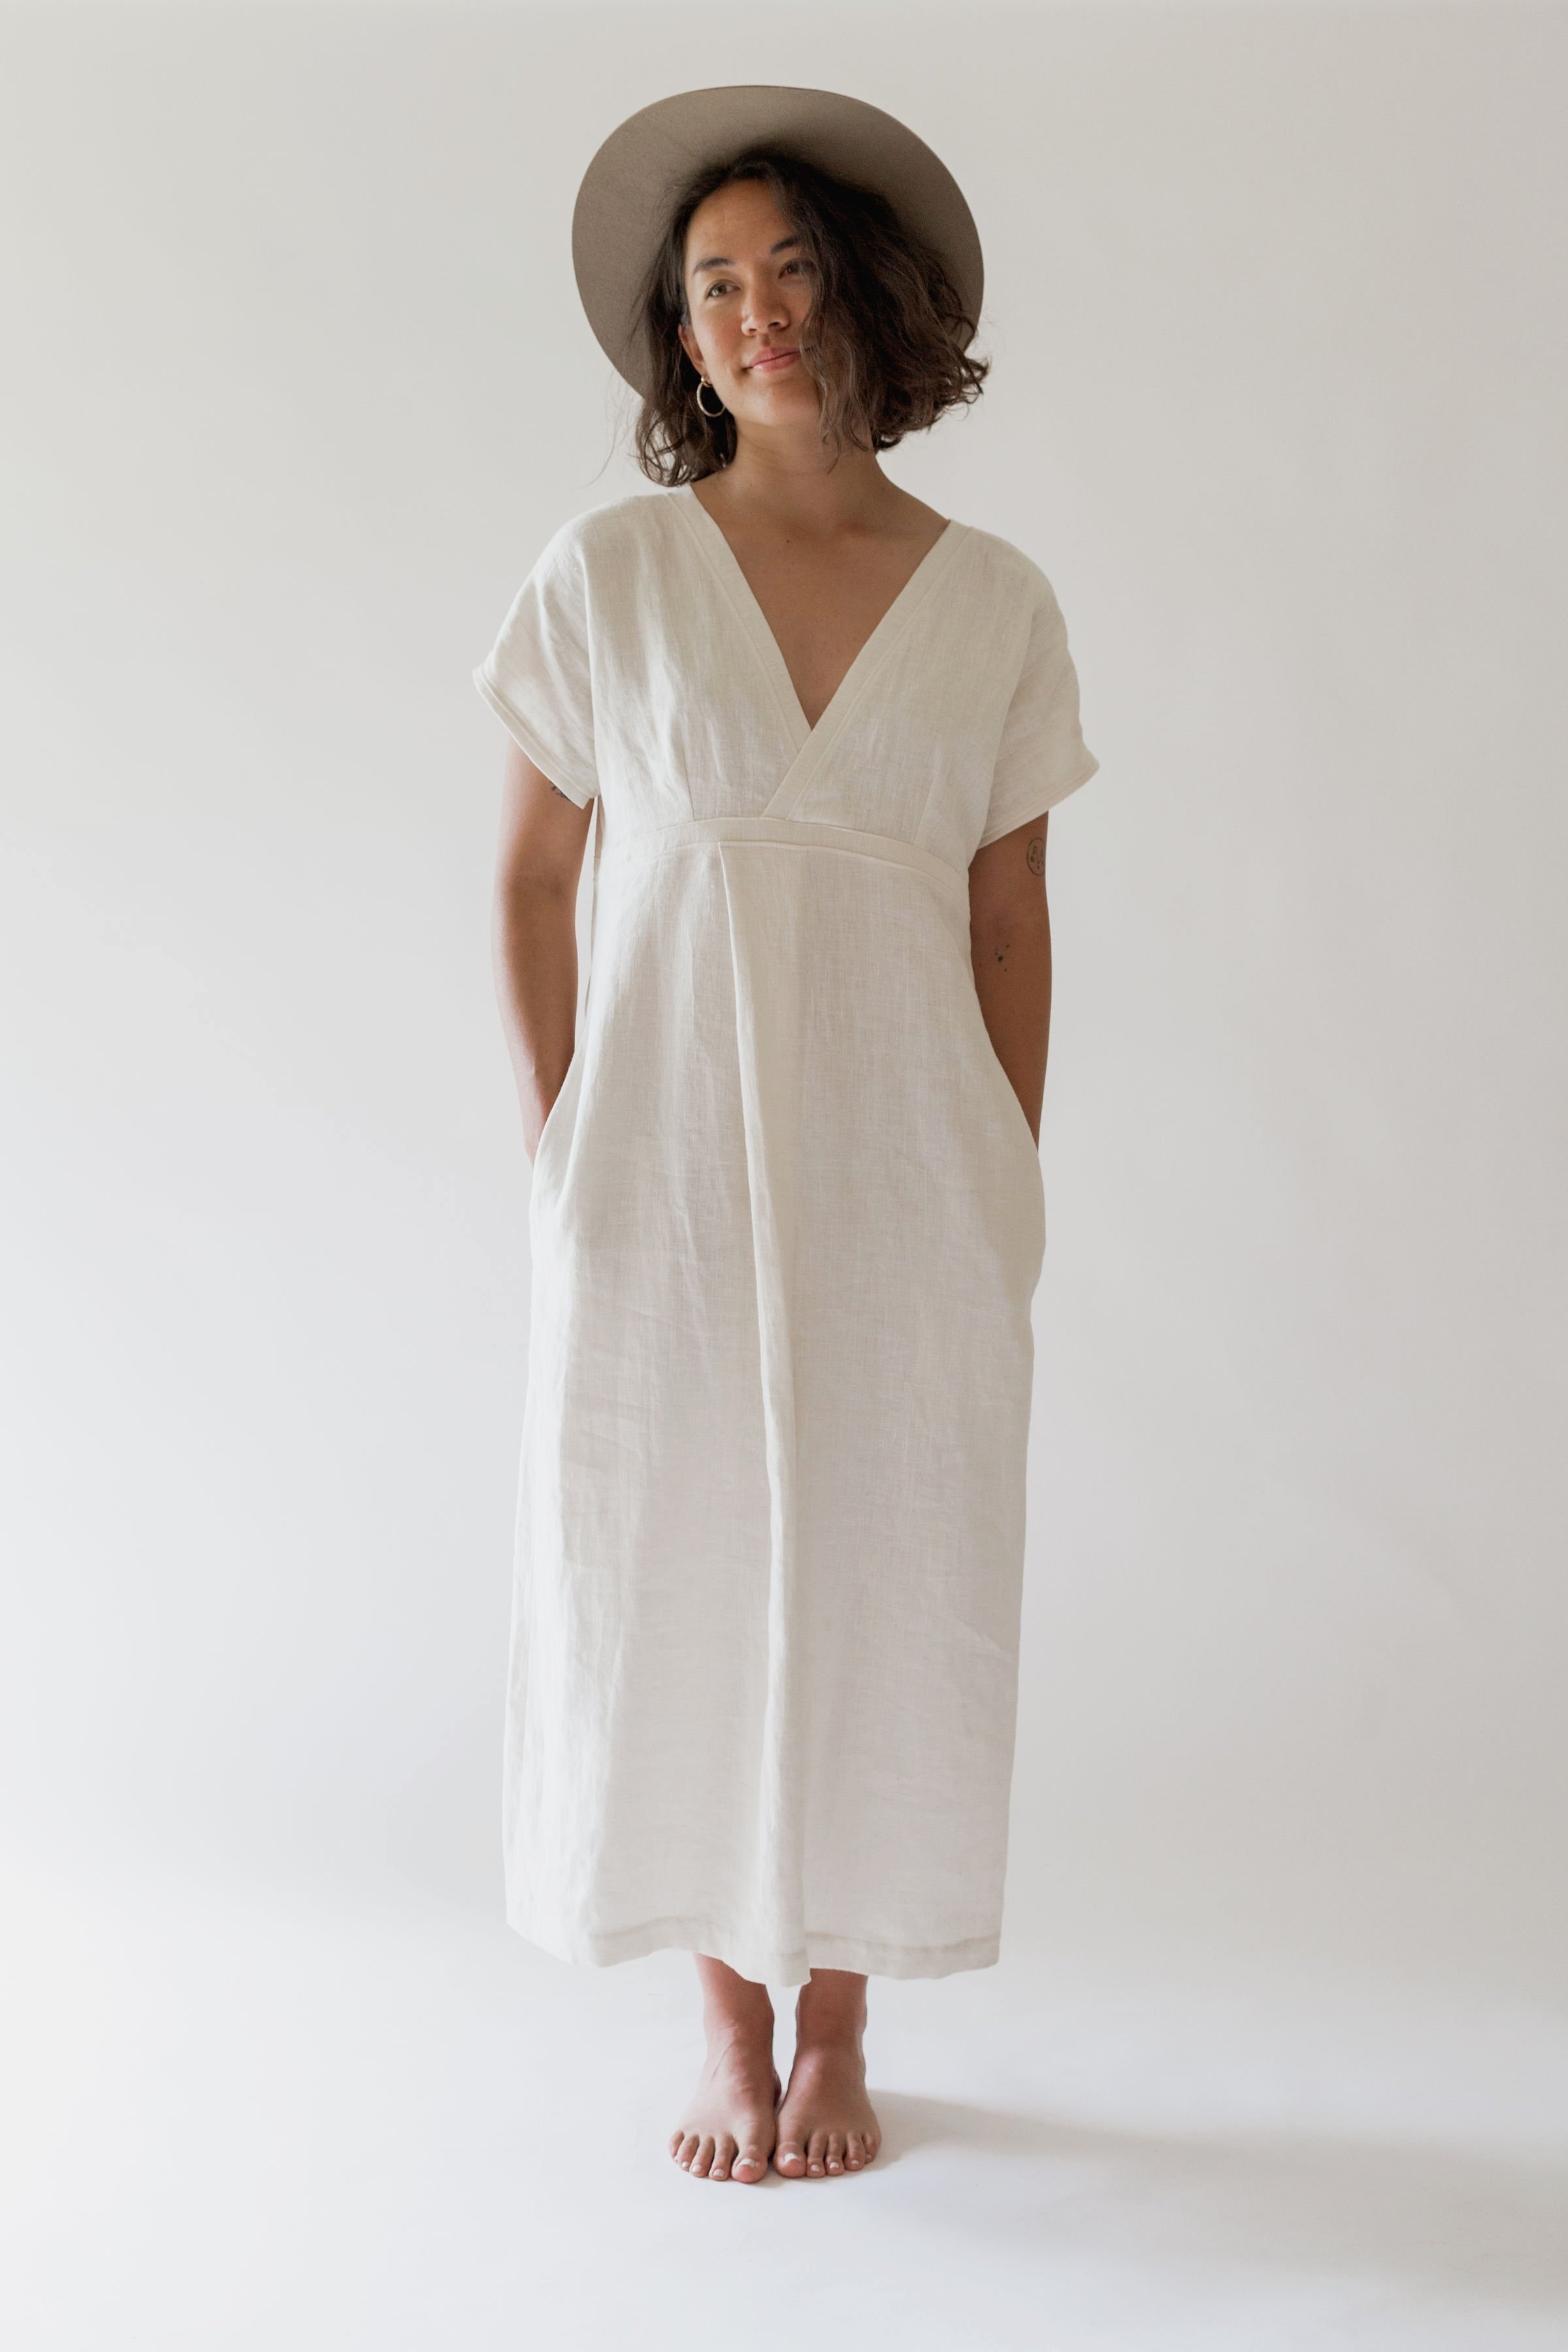 Linen Dress, Linen Skirt  Linen Clothing Canada — Nomi Designs